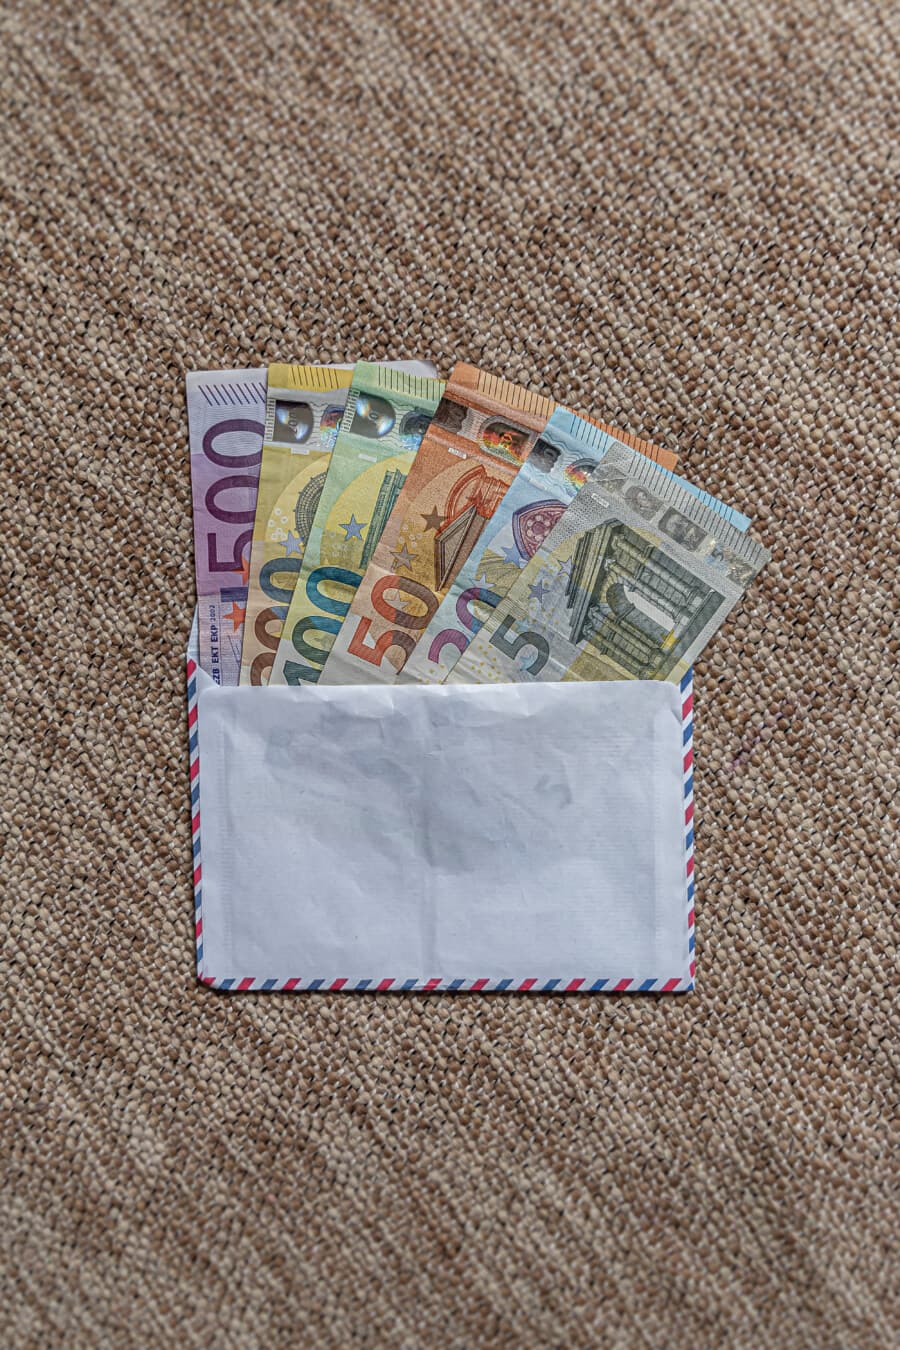 現金貯金が入った白い封筒には、買い物のためのお金が描かれています